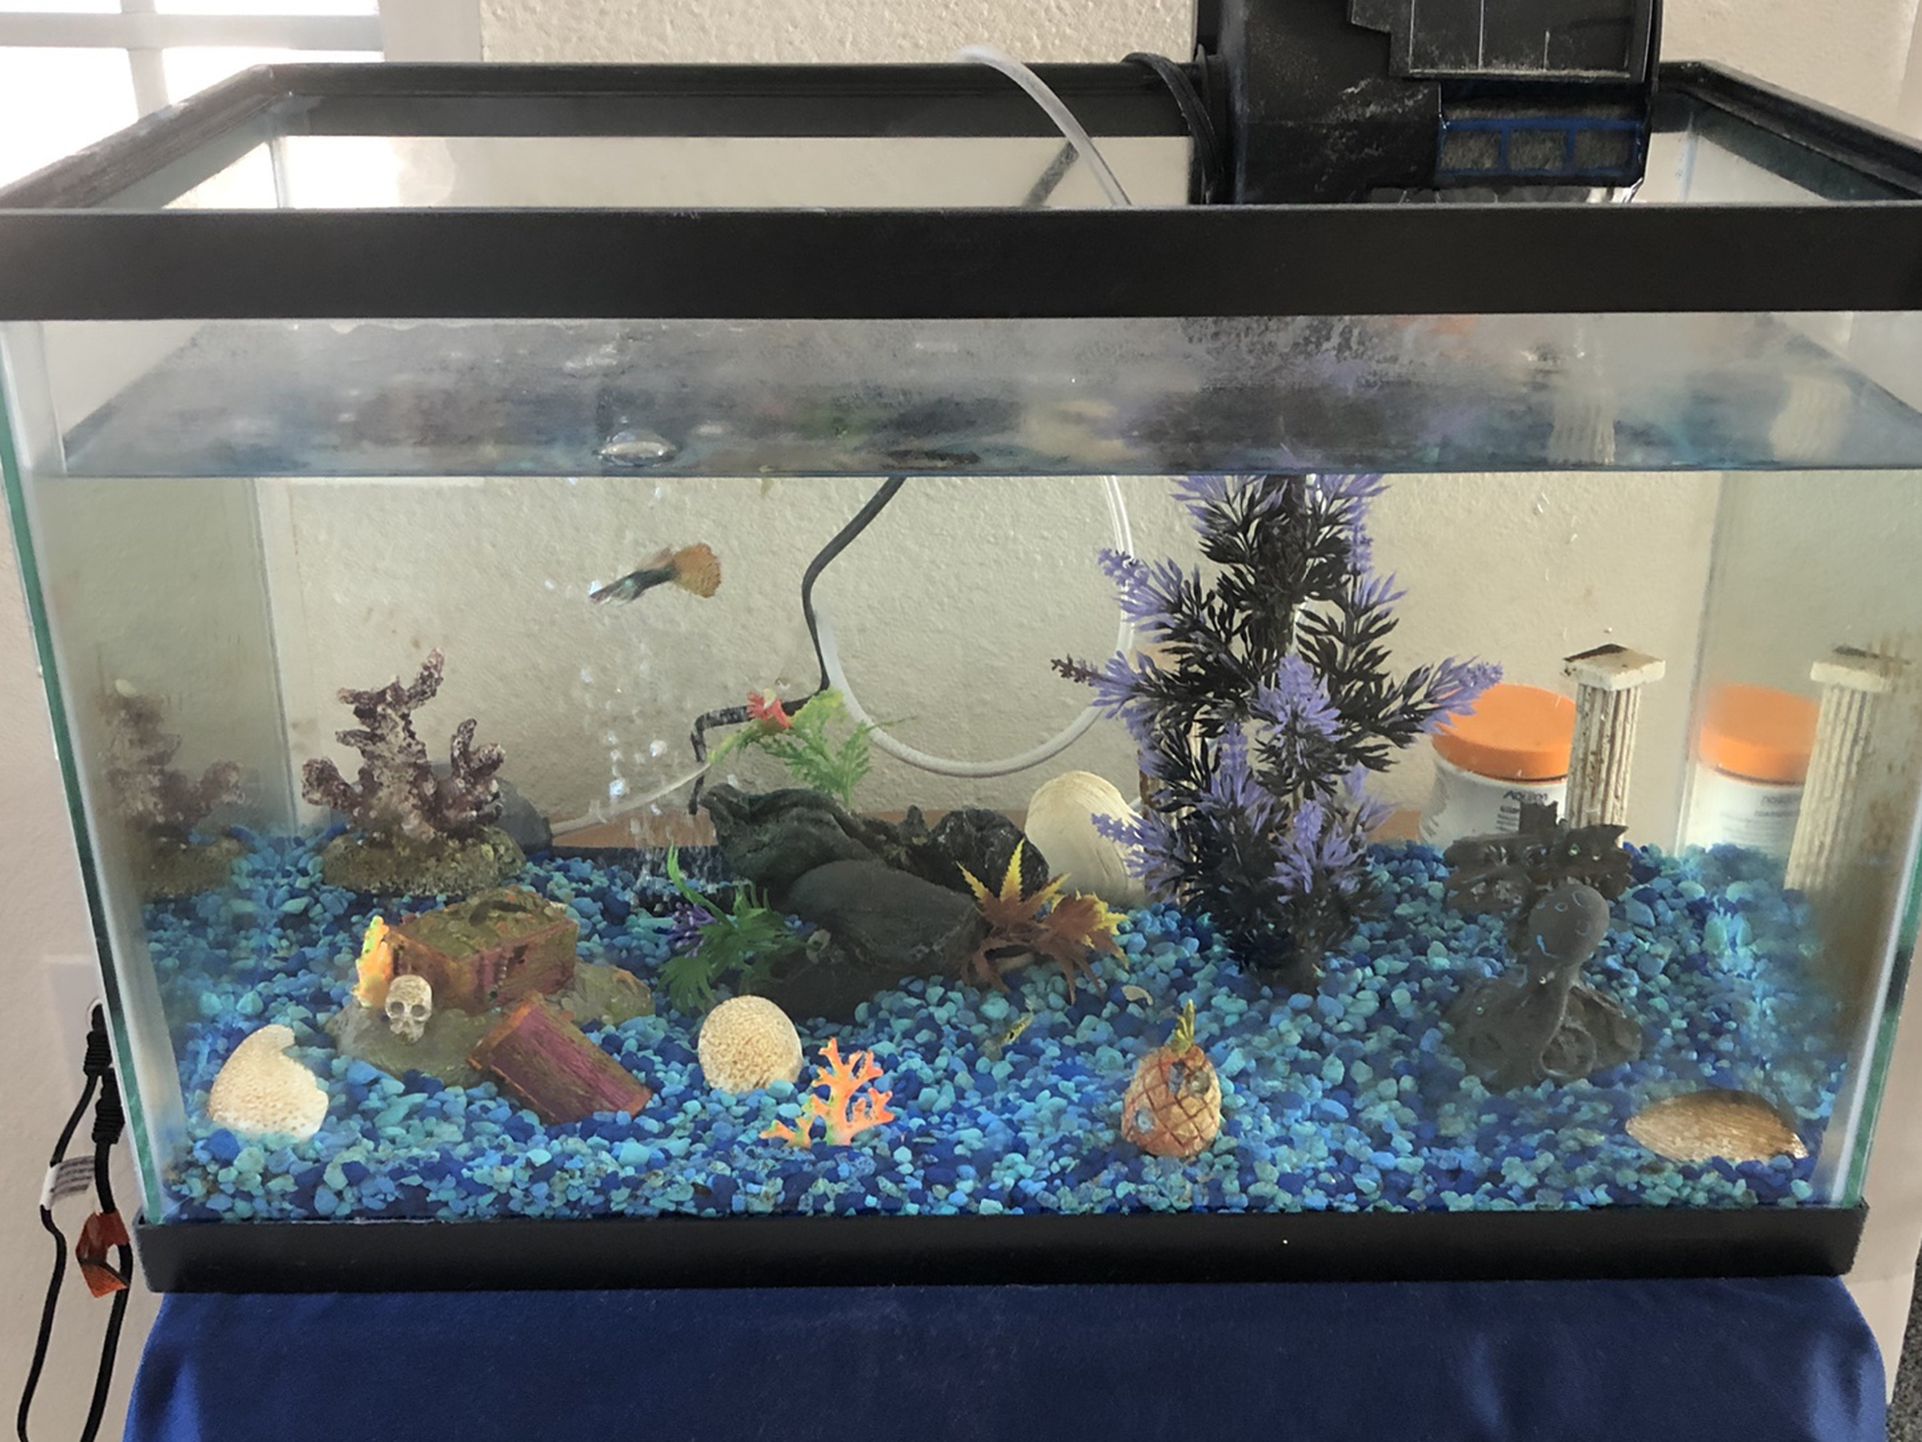 Aquarium 10 gallon with pump, filter, aerator & fish Included